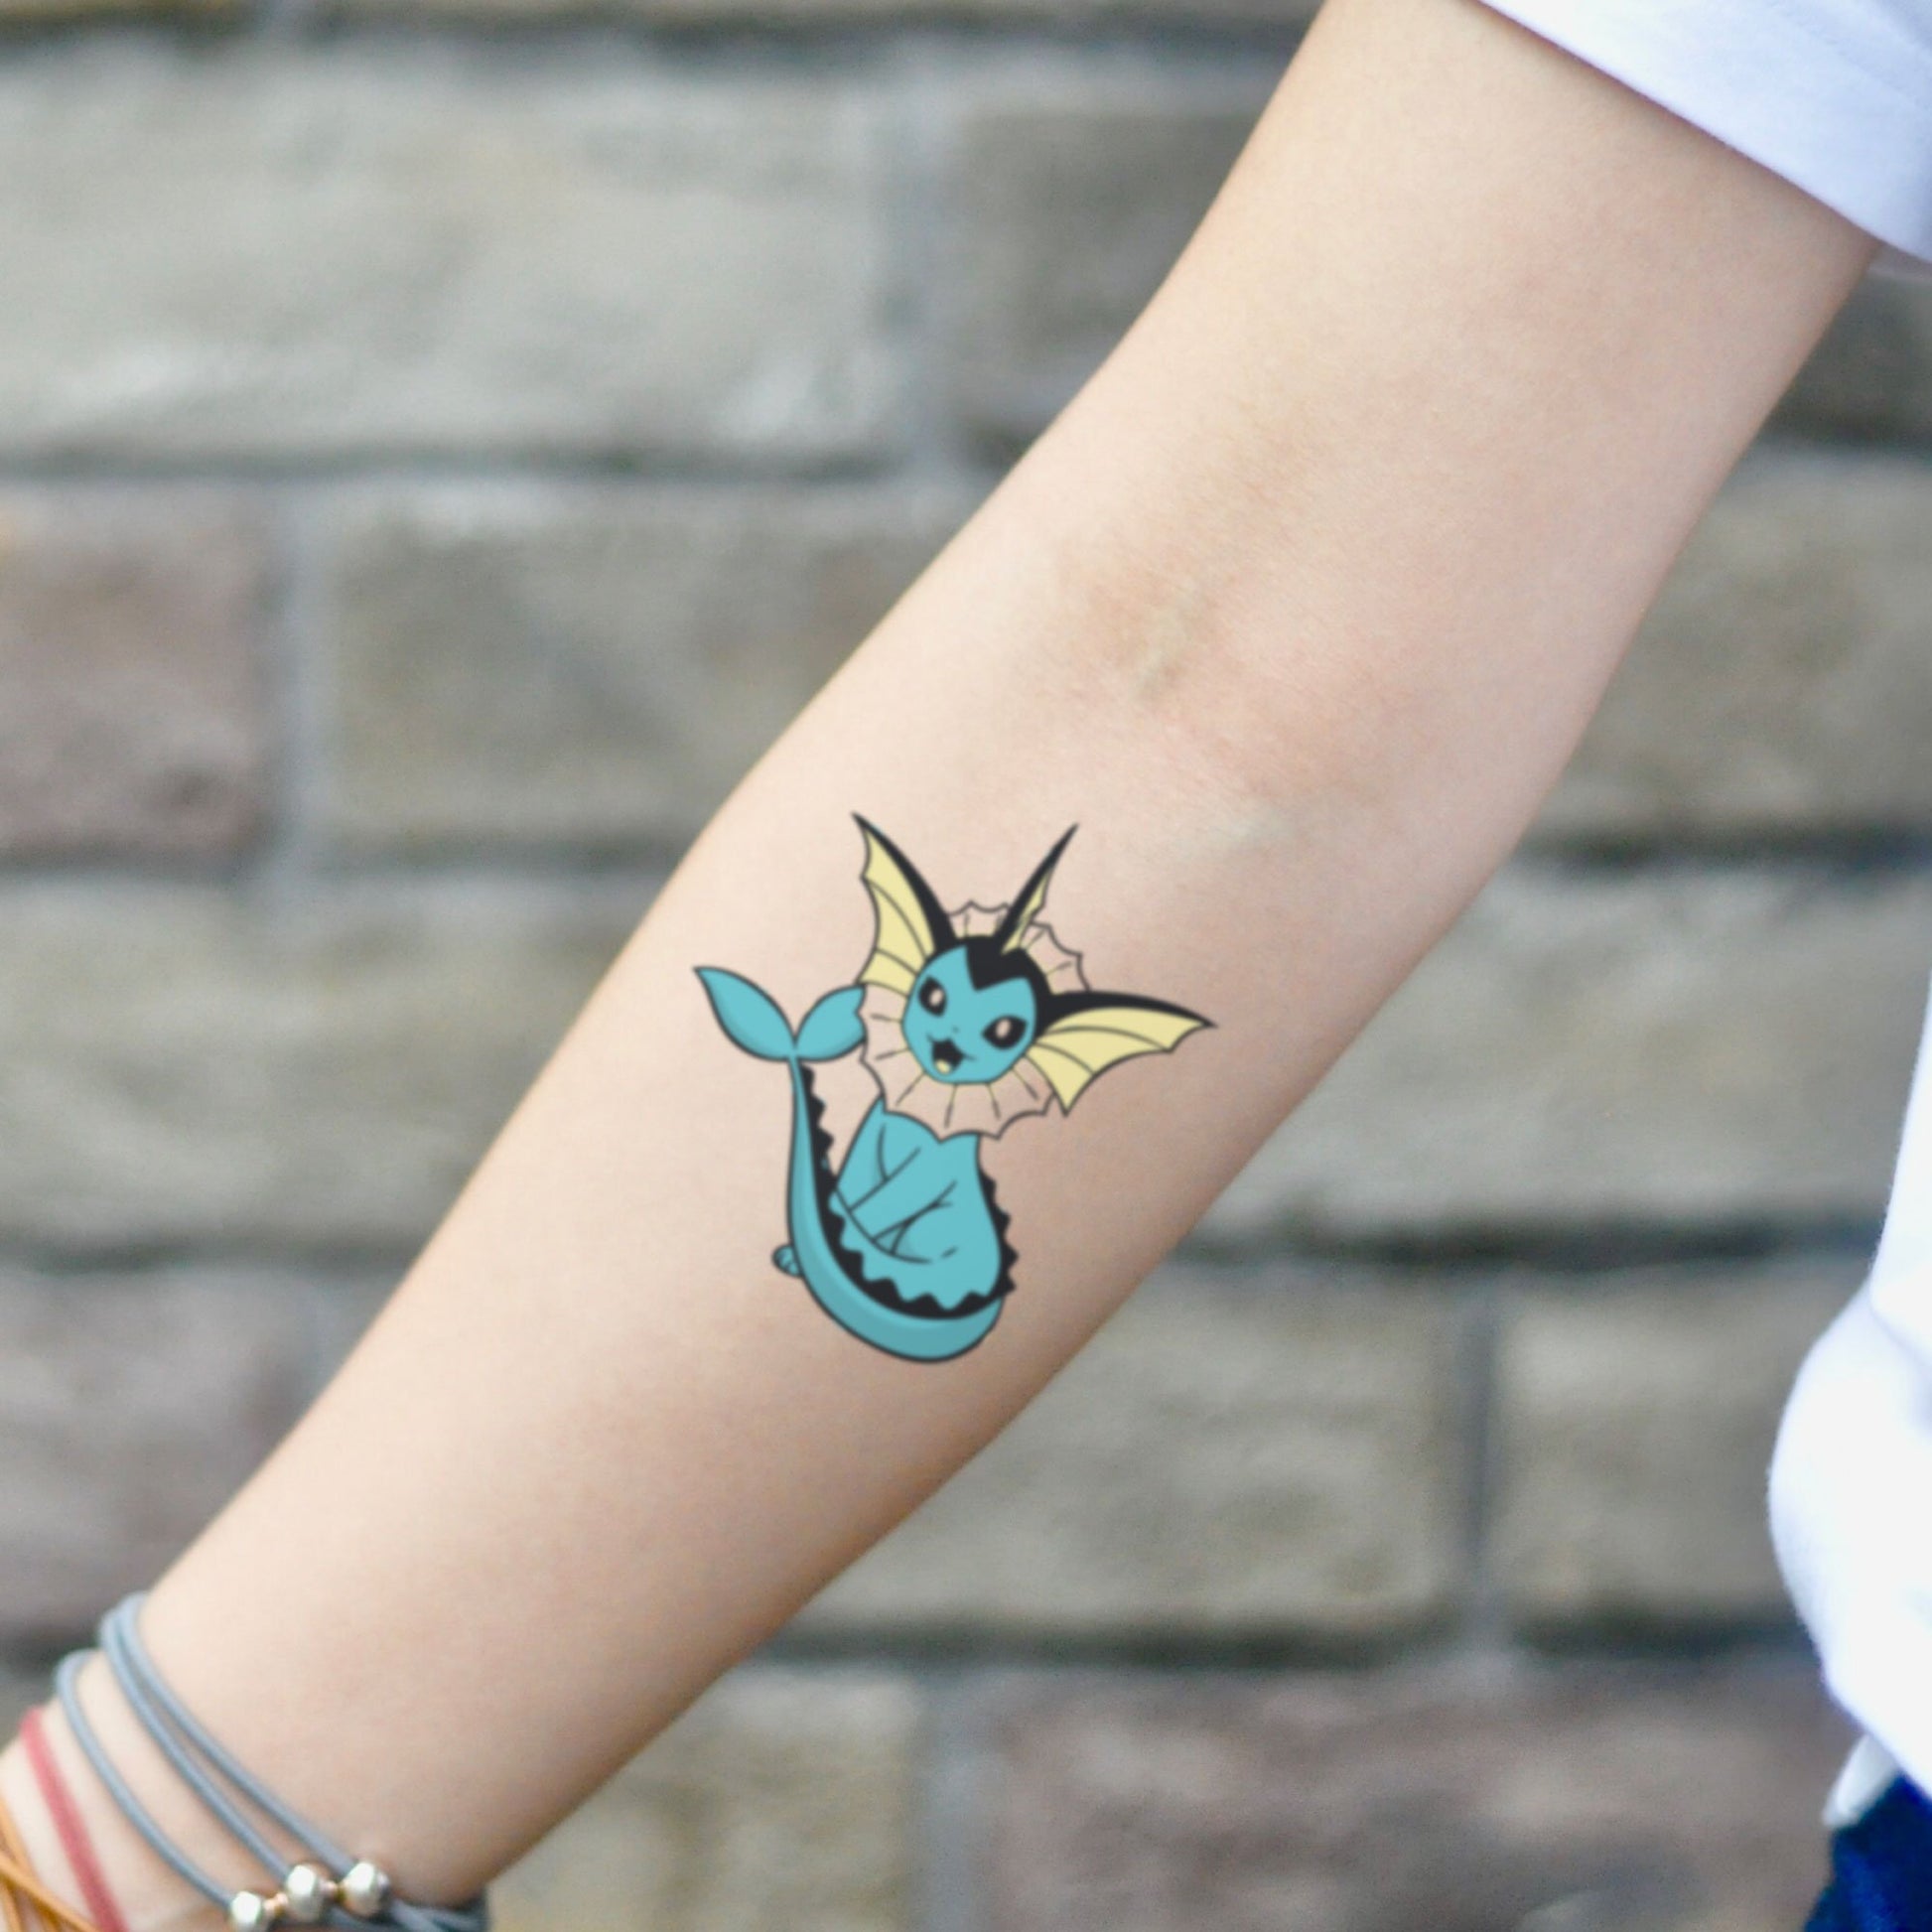 fake small vaporeon pokemon cartoon temporary tattoo sticker design idea on inner arm